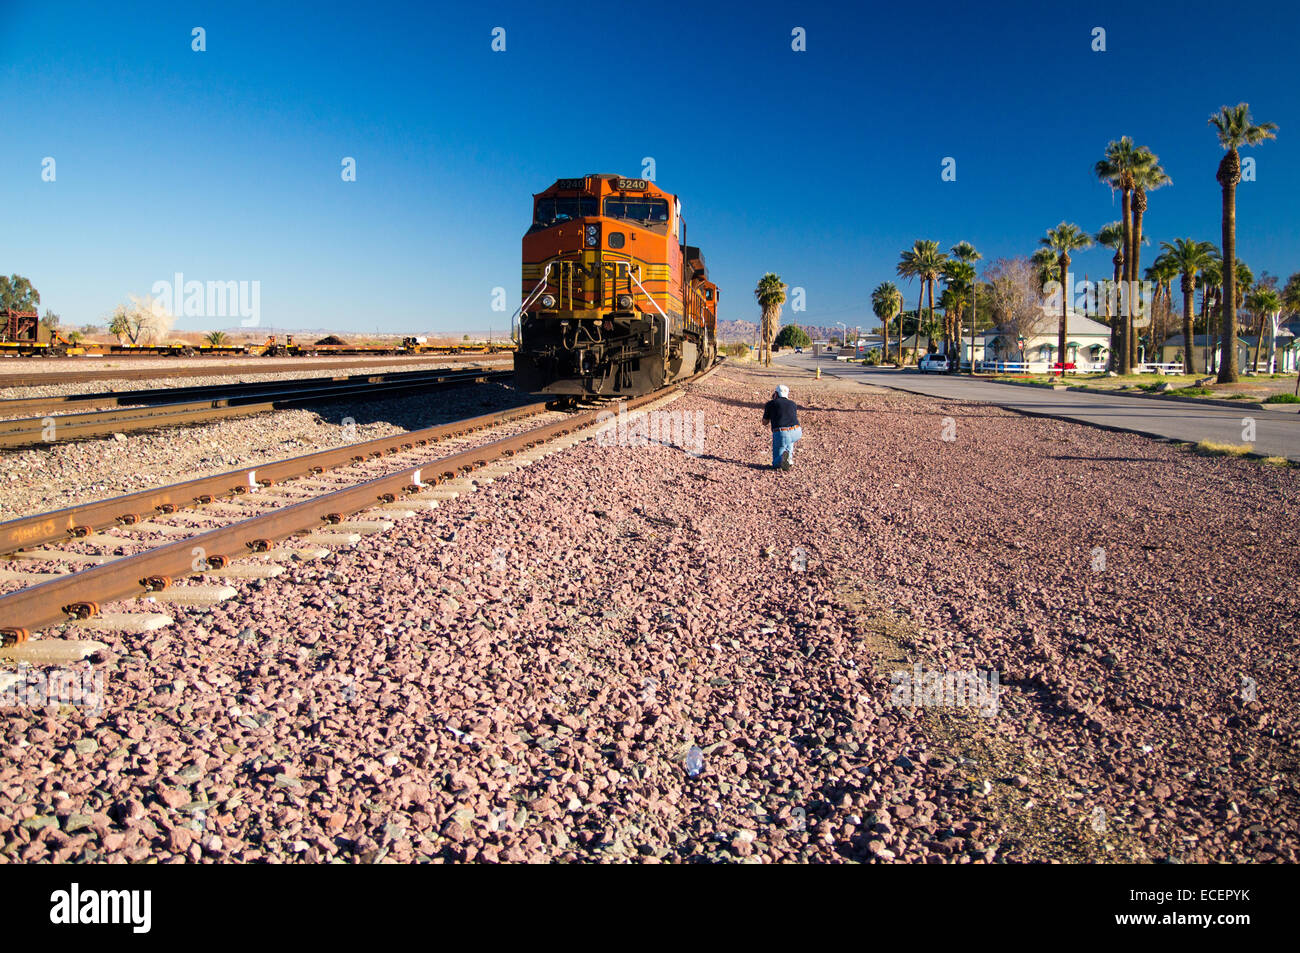 Capture de l'image photographe orange et jaune distinctif Burlington Northern Santa Fe train marchandises locomotive no. 5240 Banque D'Images